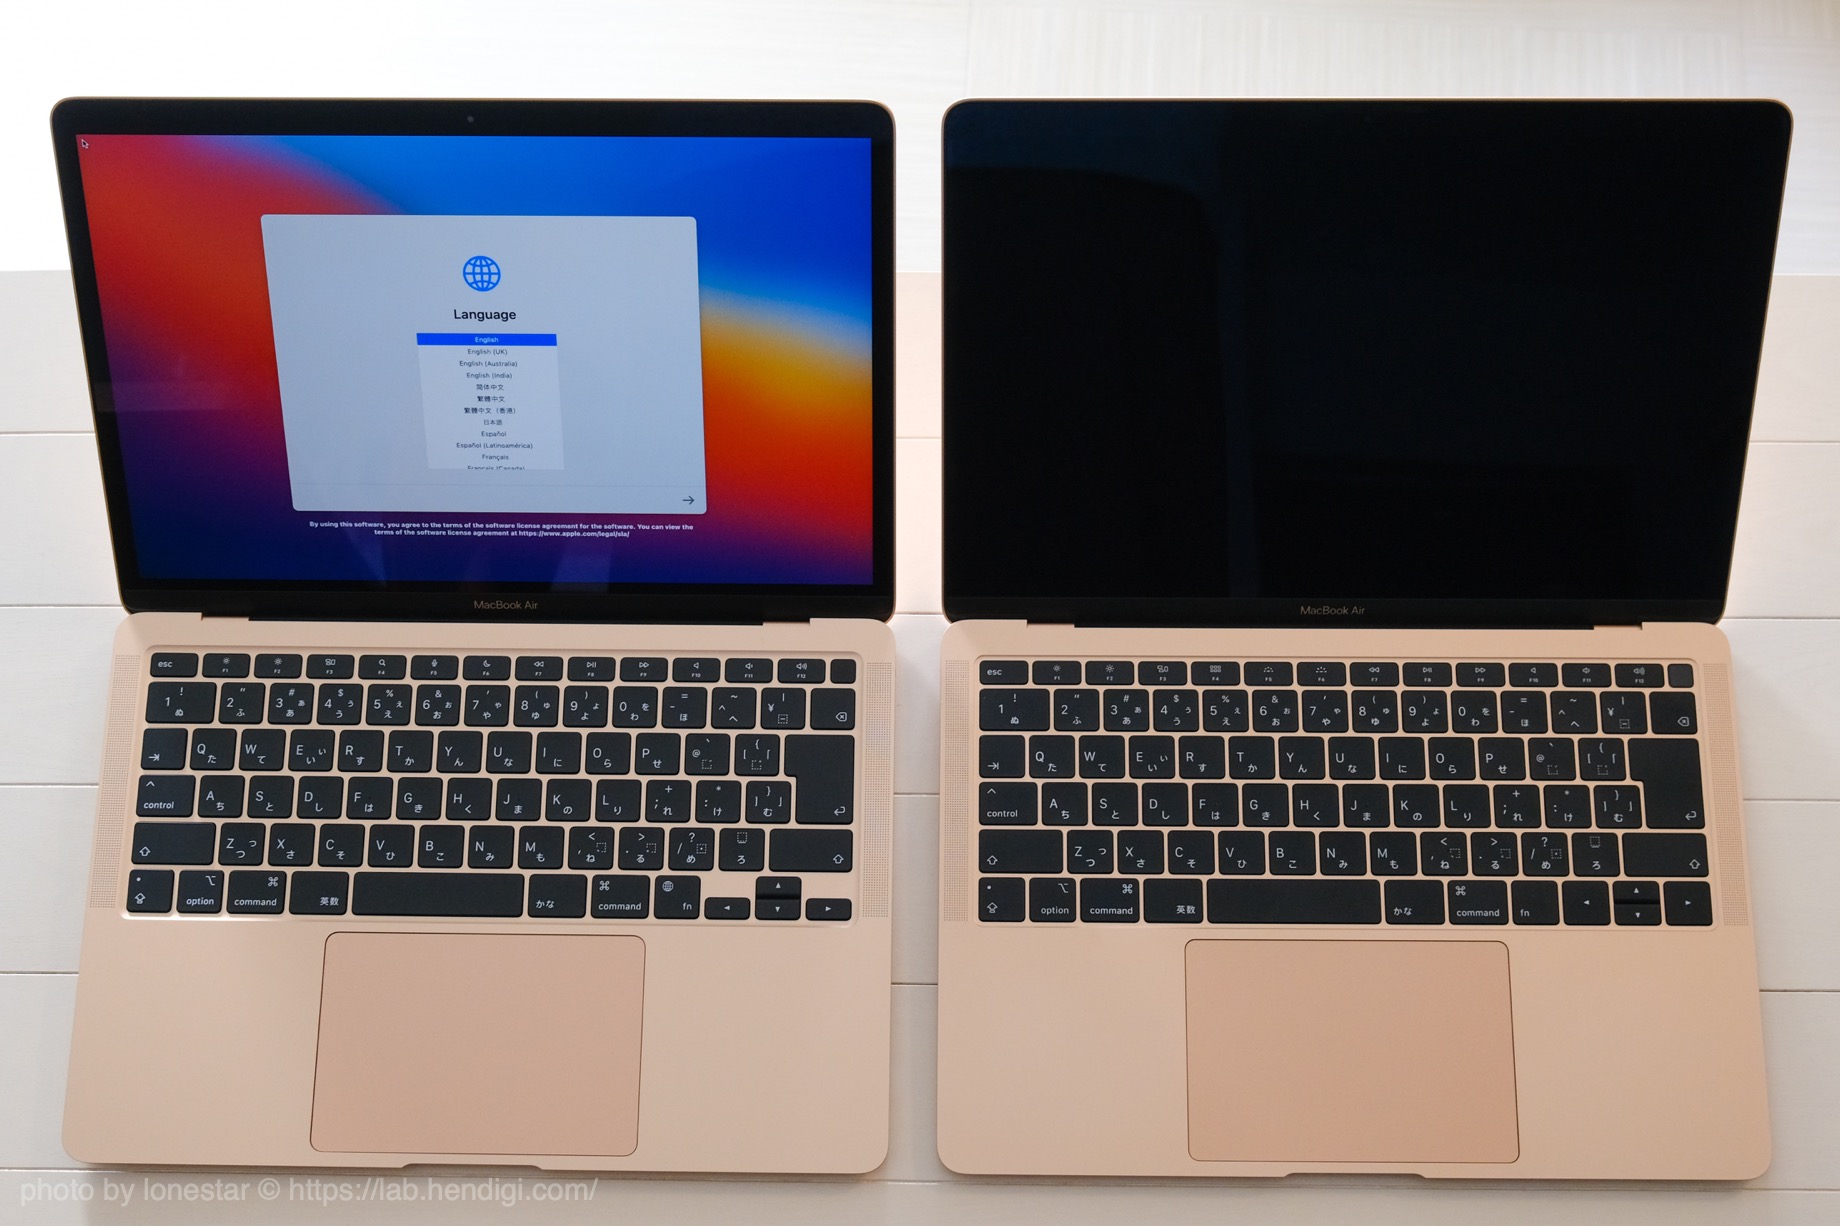 【高価値】 MacBook M1チップ搭載13インチ Air ノートPC